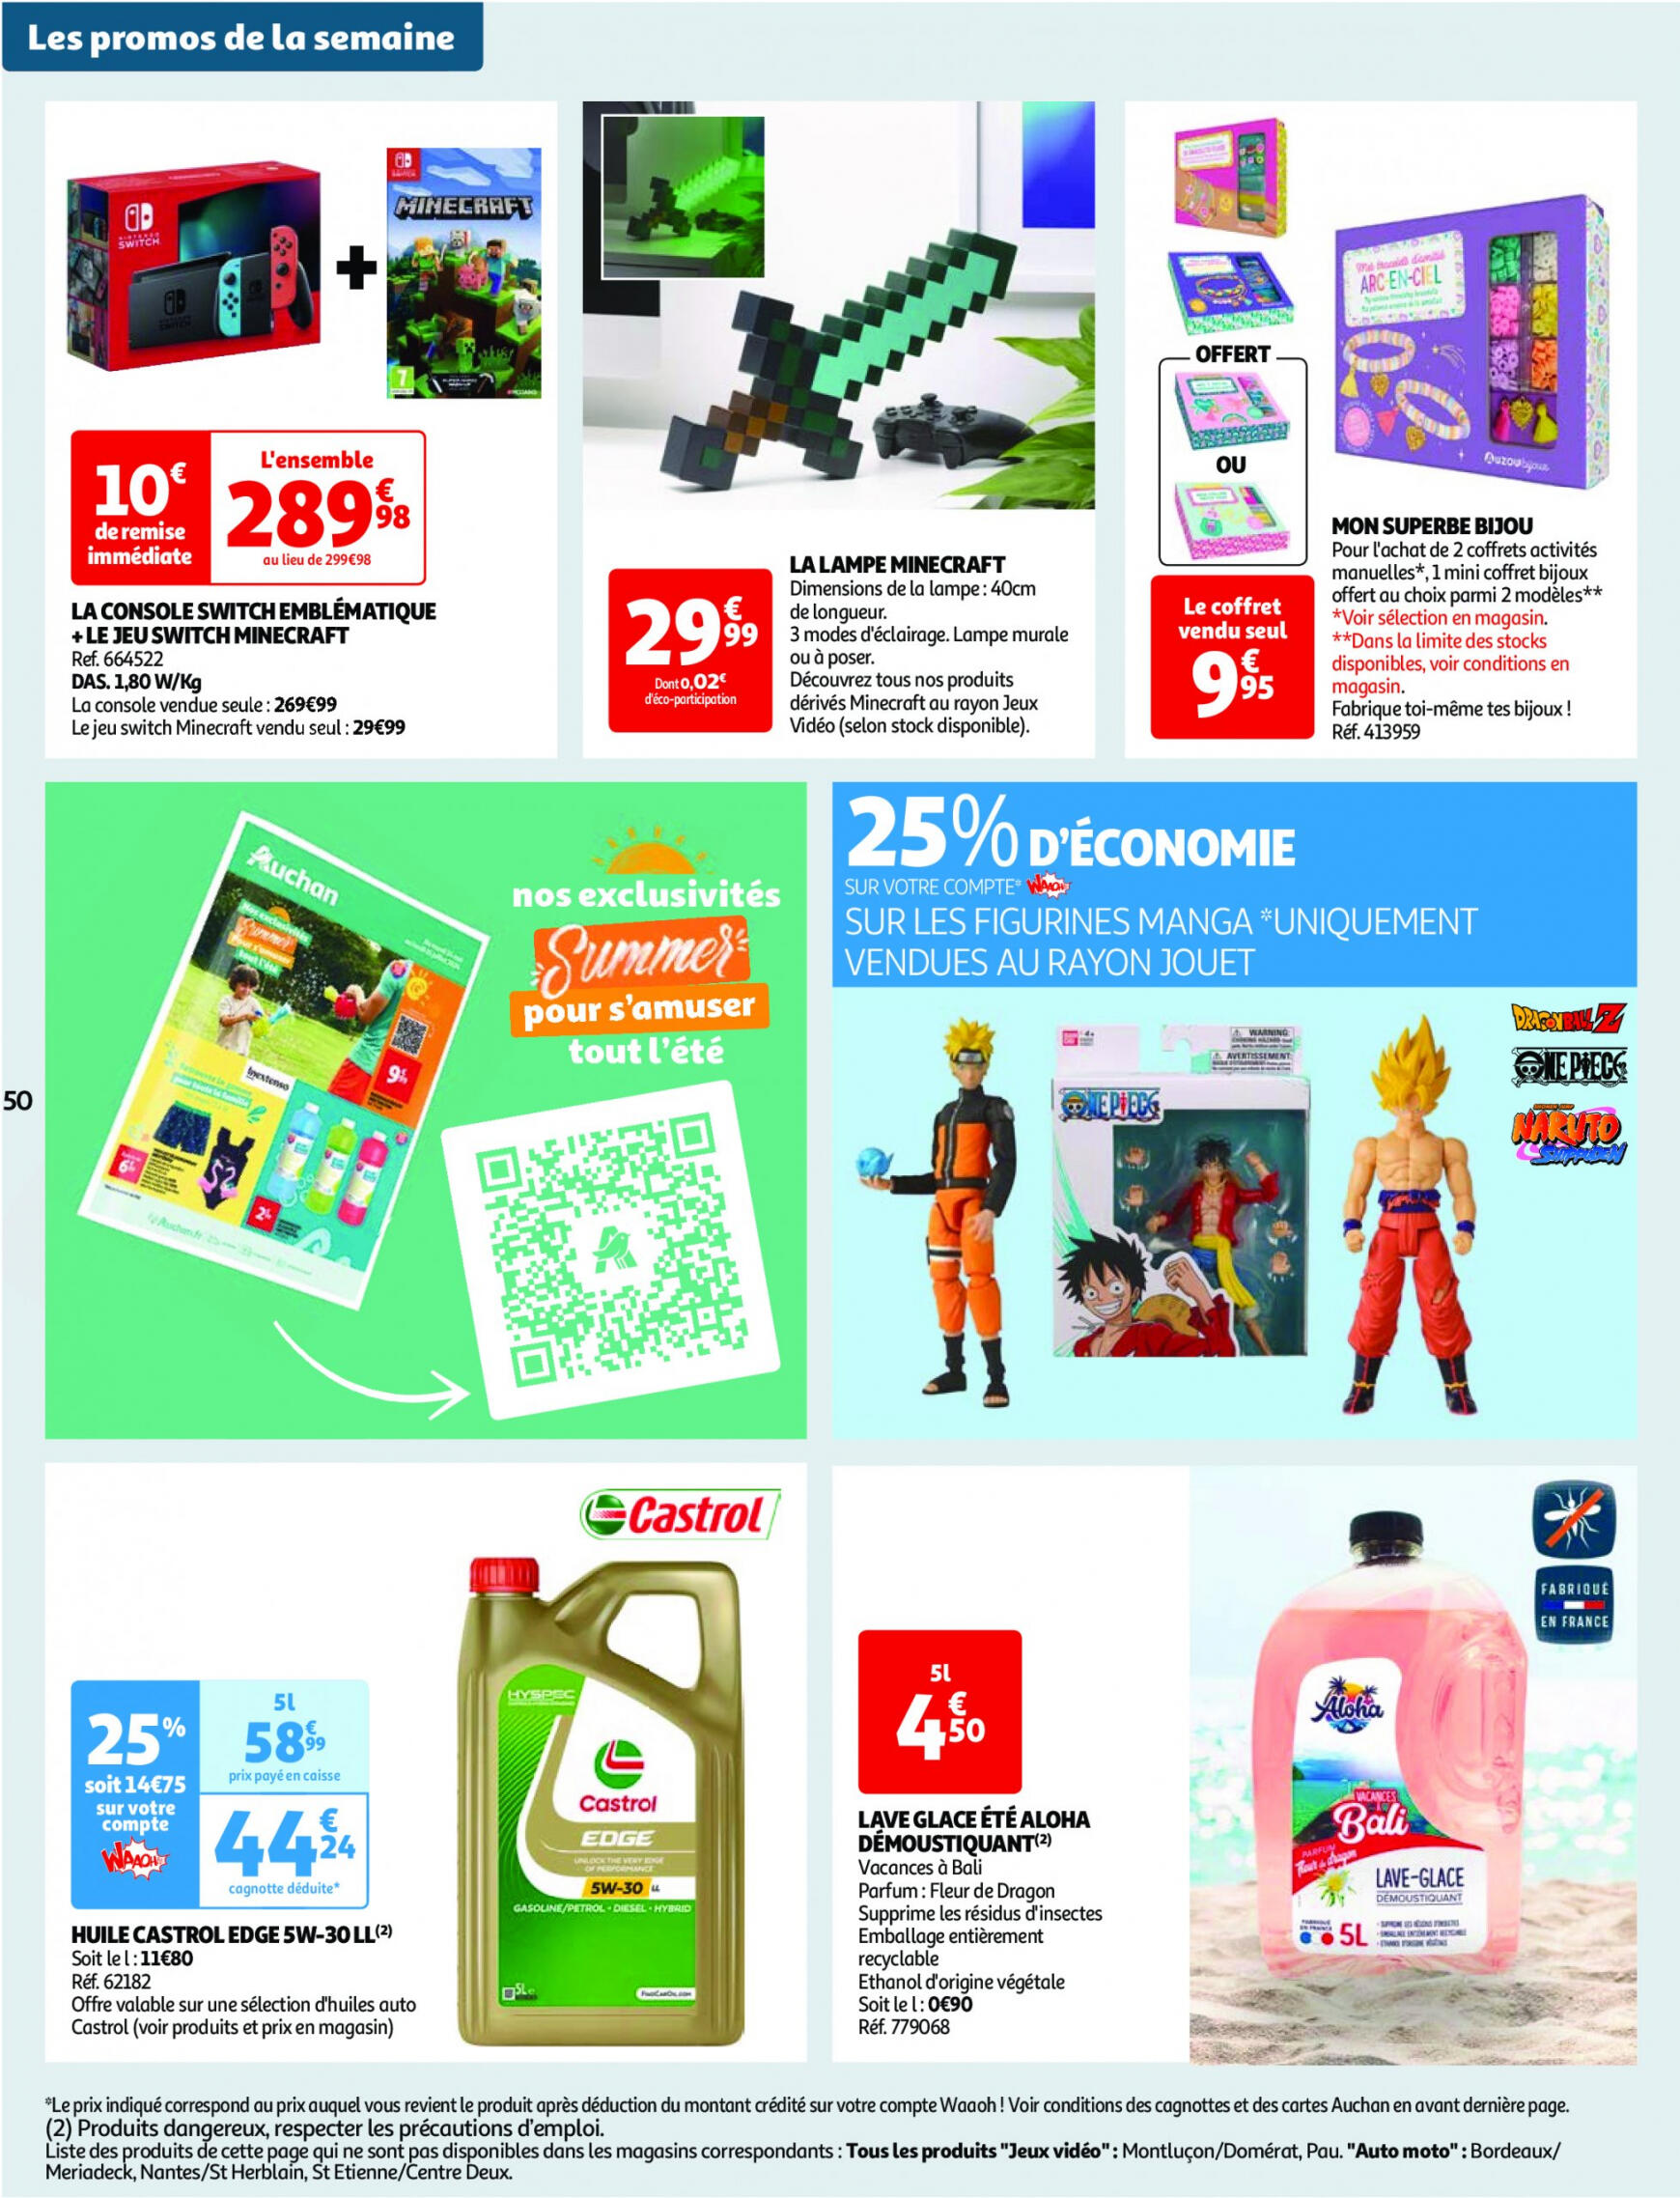 auchan - Prospectus Auchan actuel 14.05. - 21.05. - page: 50